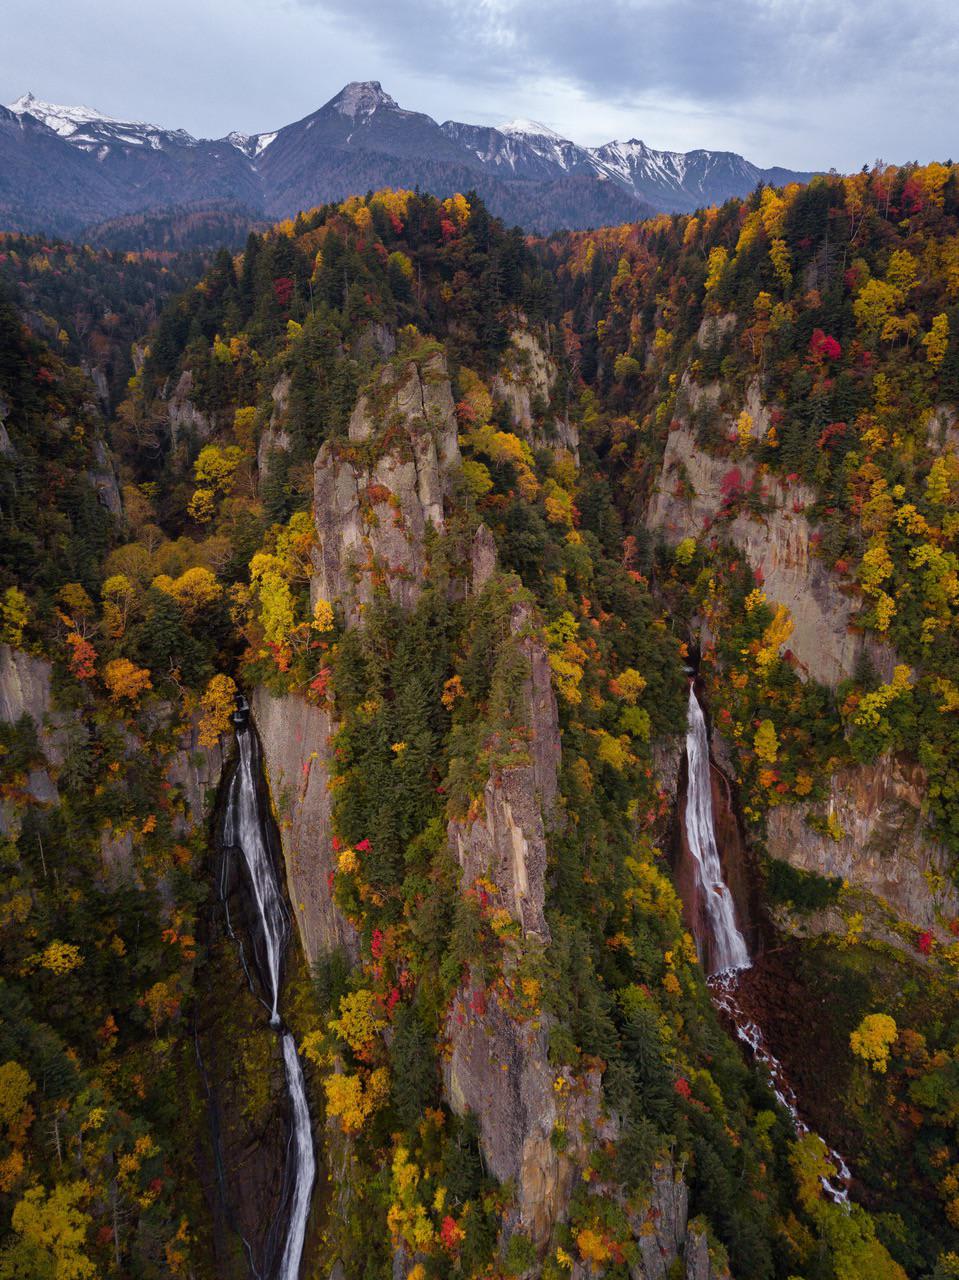 ITAP of 2 waterfalls in Hokkaido, Japan